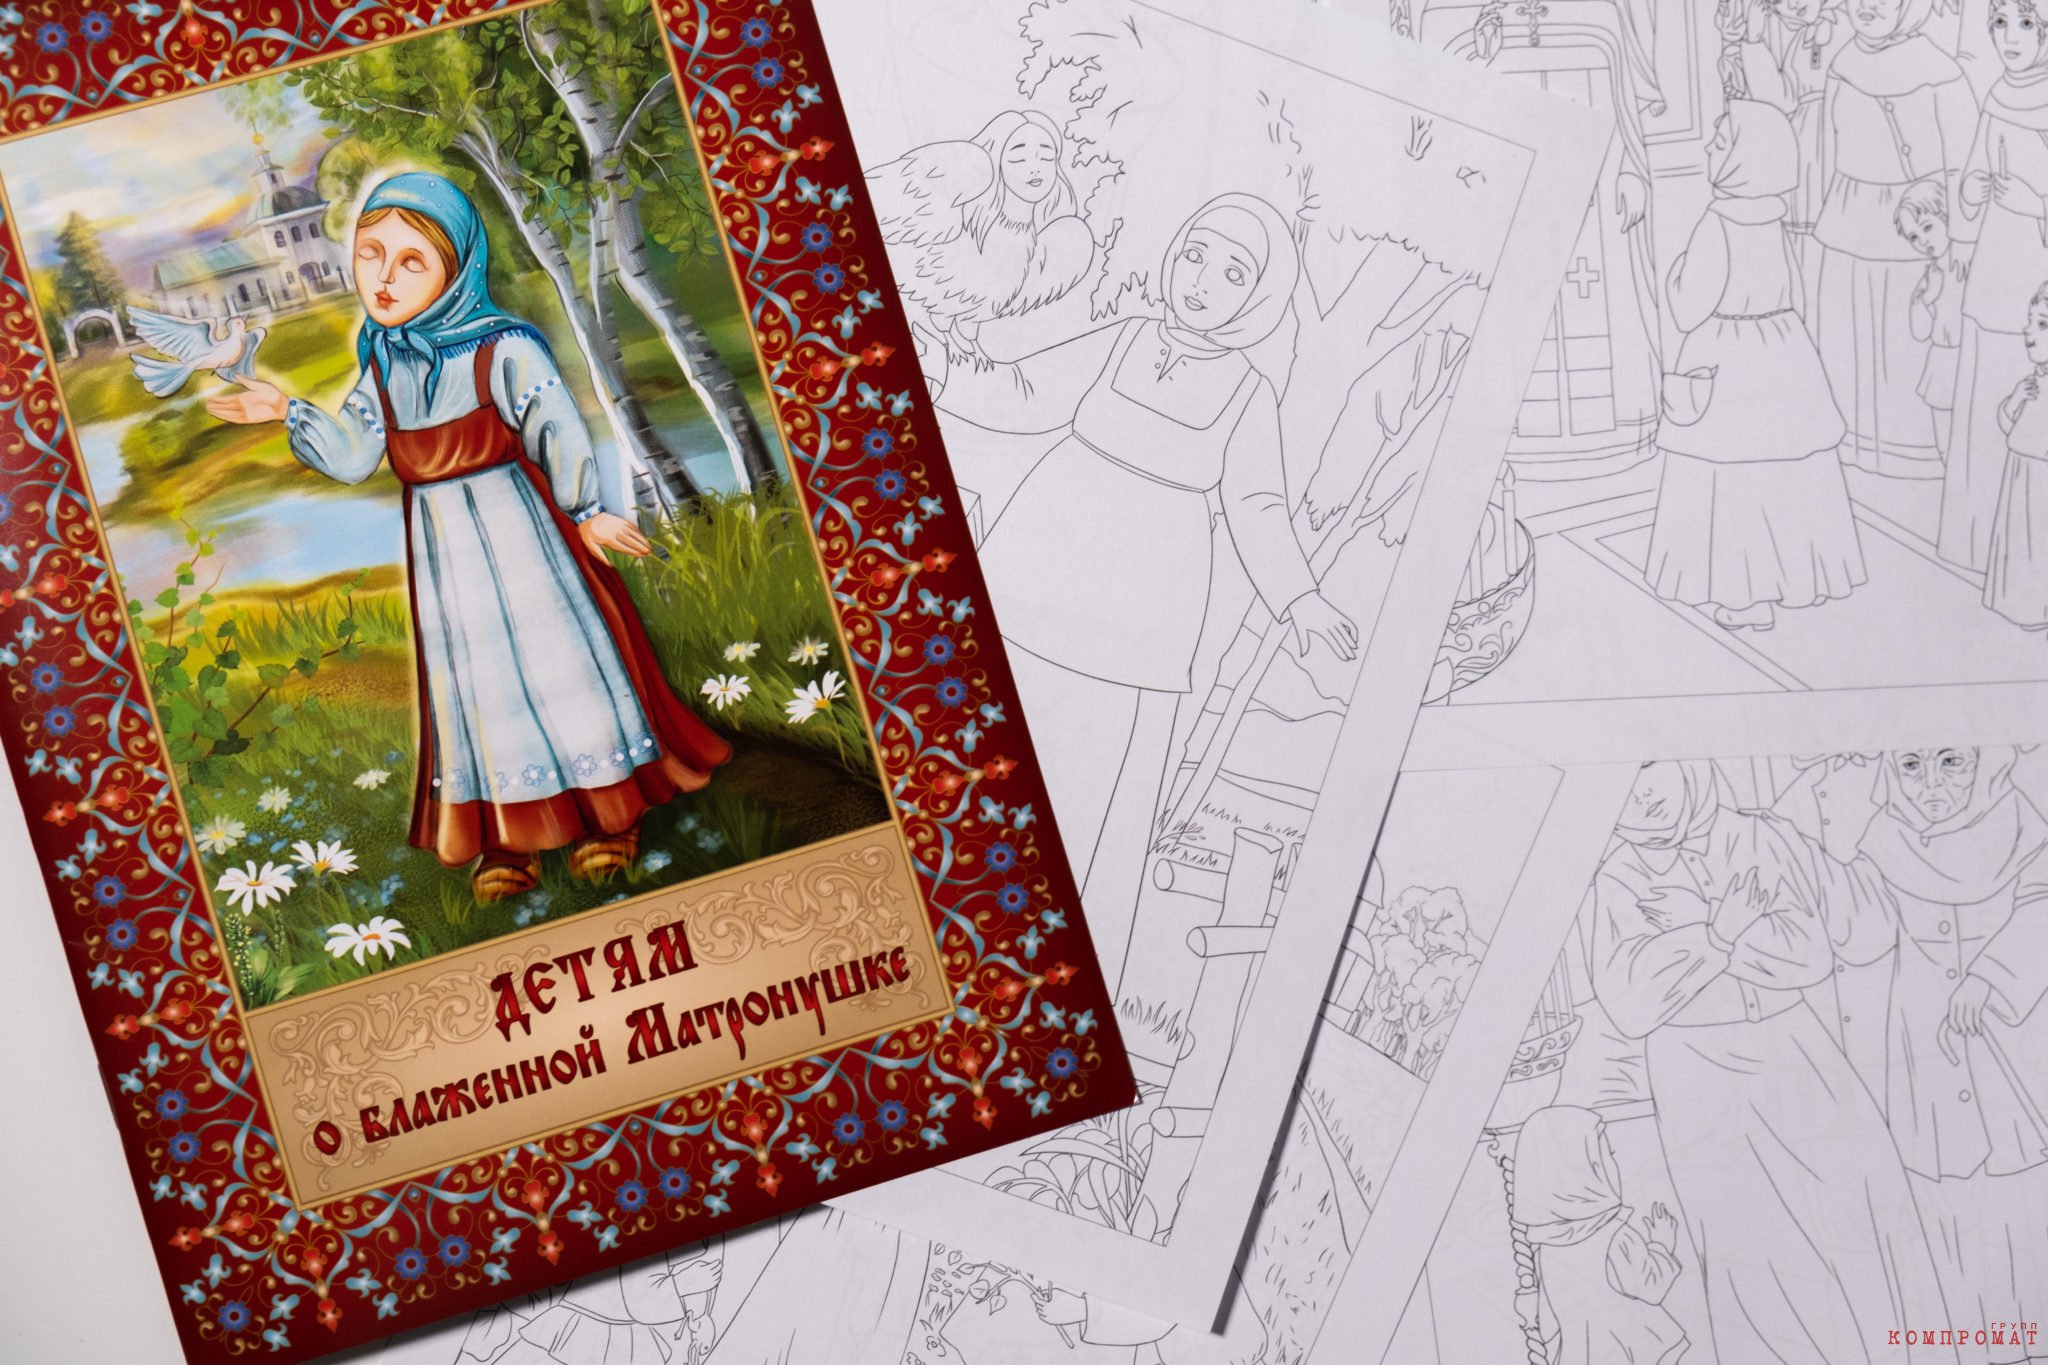 Покровский монастырь издаёт раскраски для детей по житию святой Матроны Московской